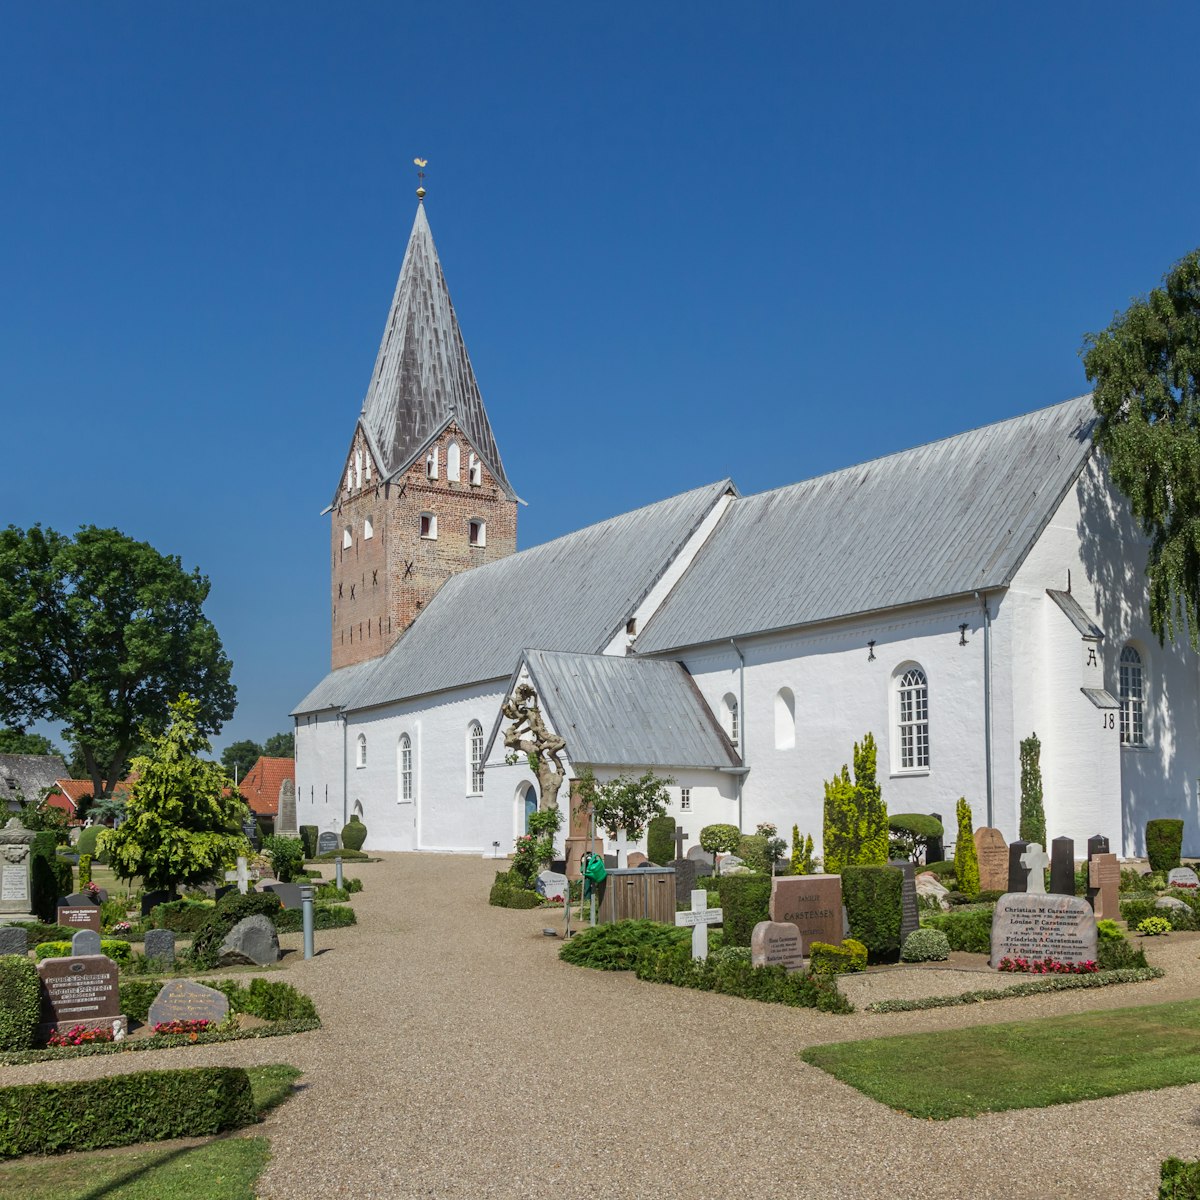 Cemetery at the Mogeltonder Kirke church in Denmark.